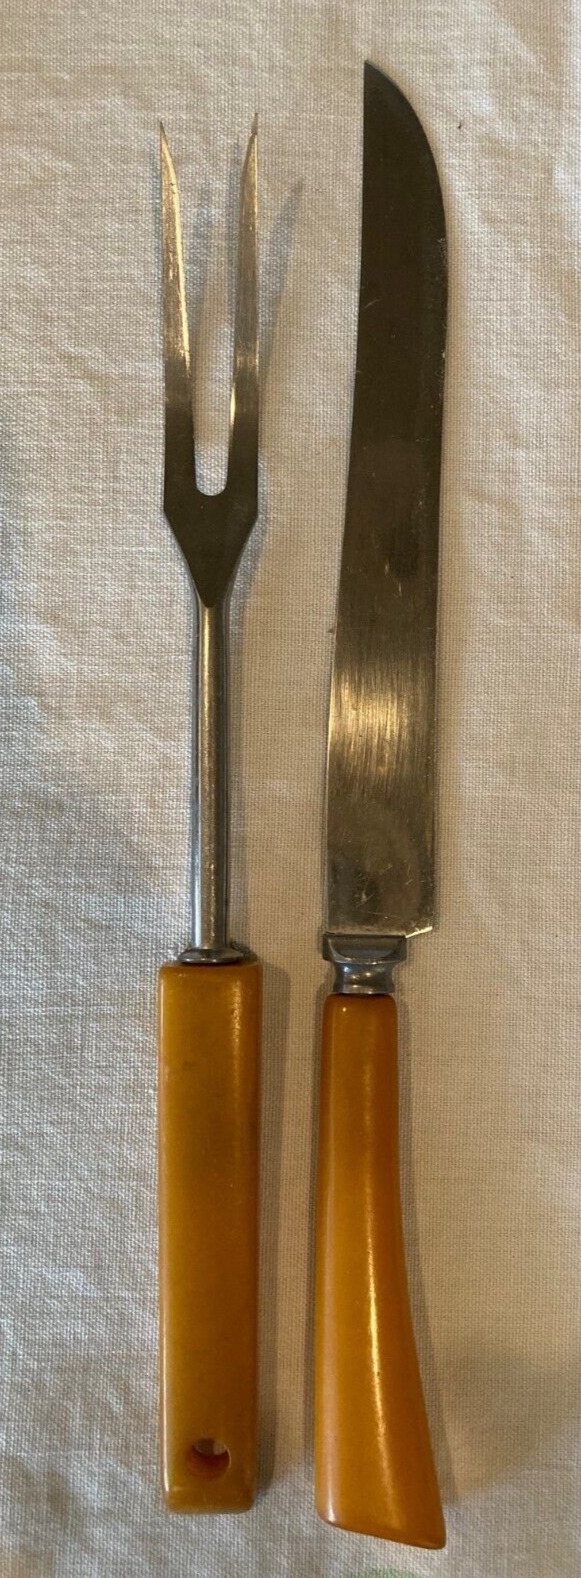 Vintage 1940s Butterscotch Handle Bakelite or Catalin Large Carving Knife & Fork